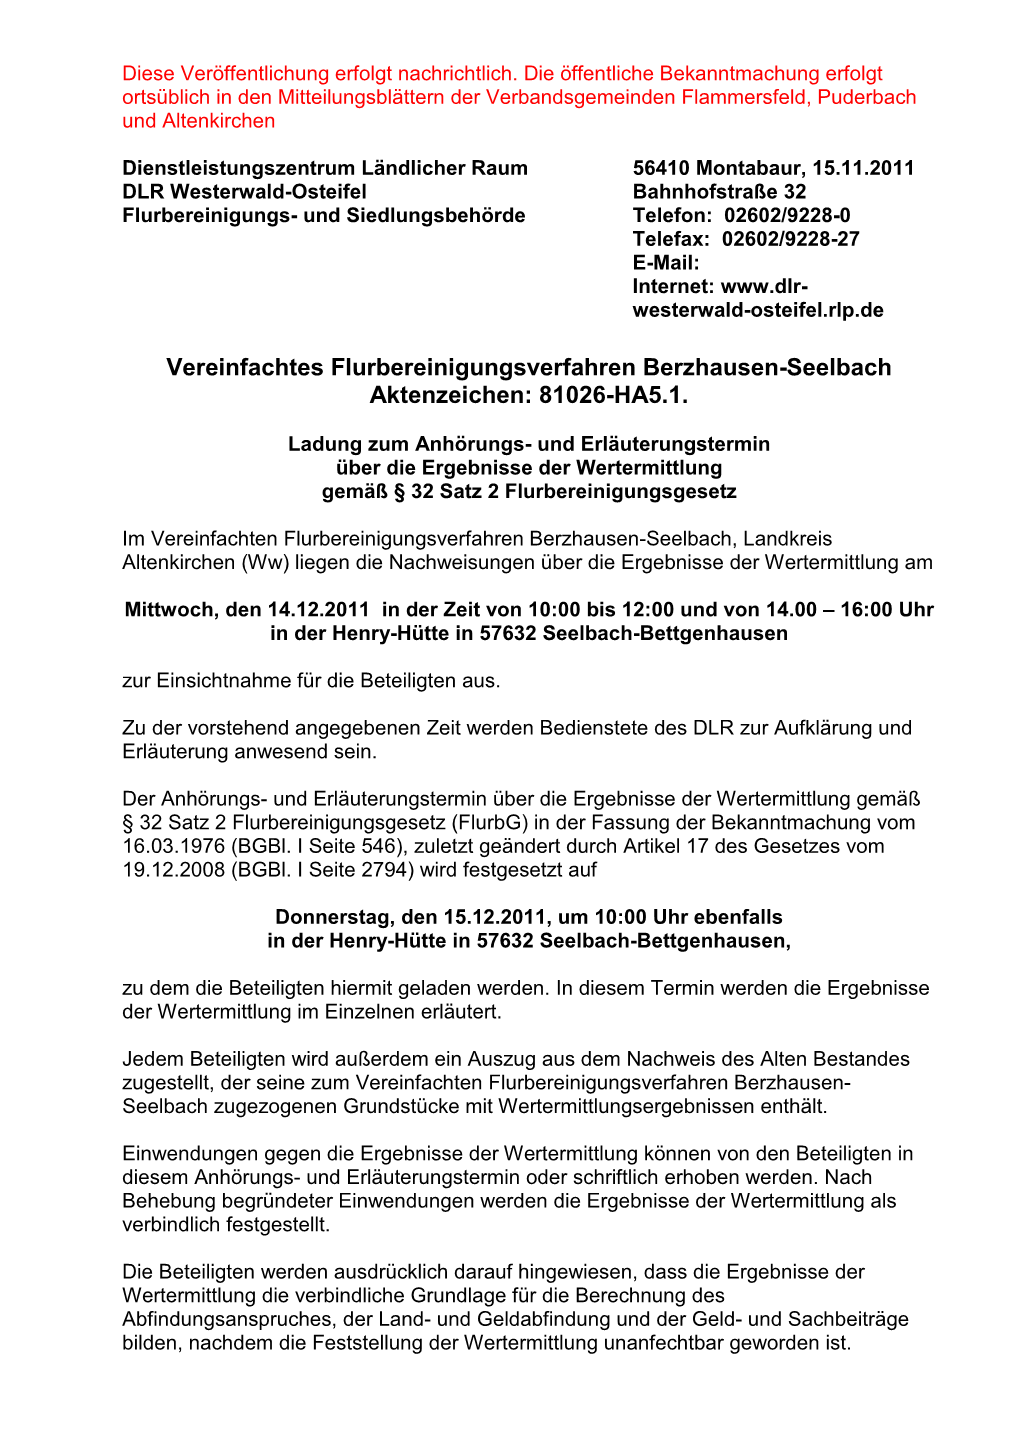 Vereinfachtes Flurbereinigungsverfahren Berzhausen-Seelbach Aktenzeichen: 81026-HA5.1